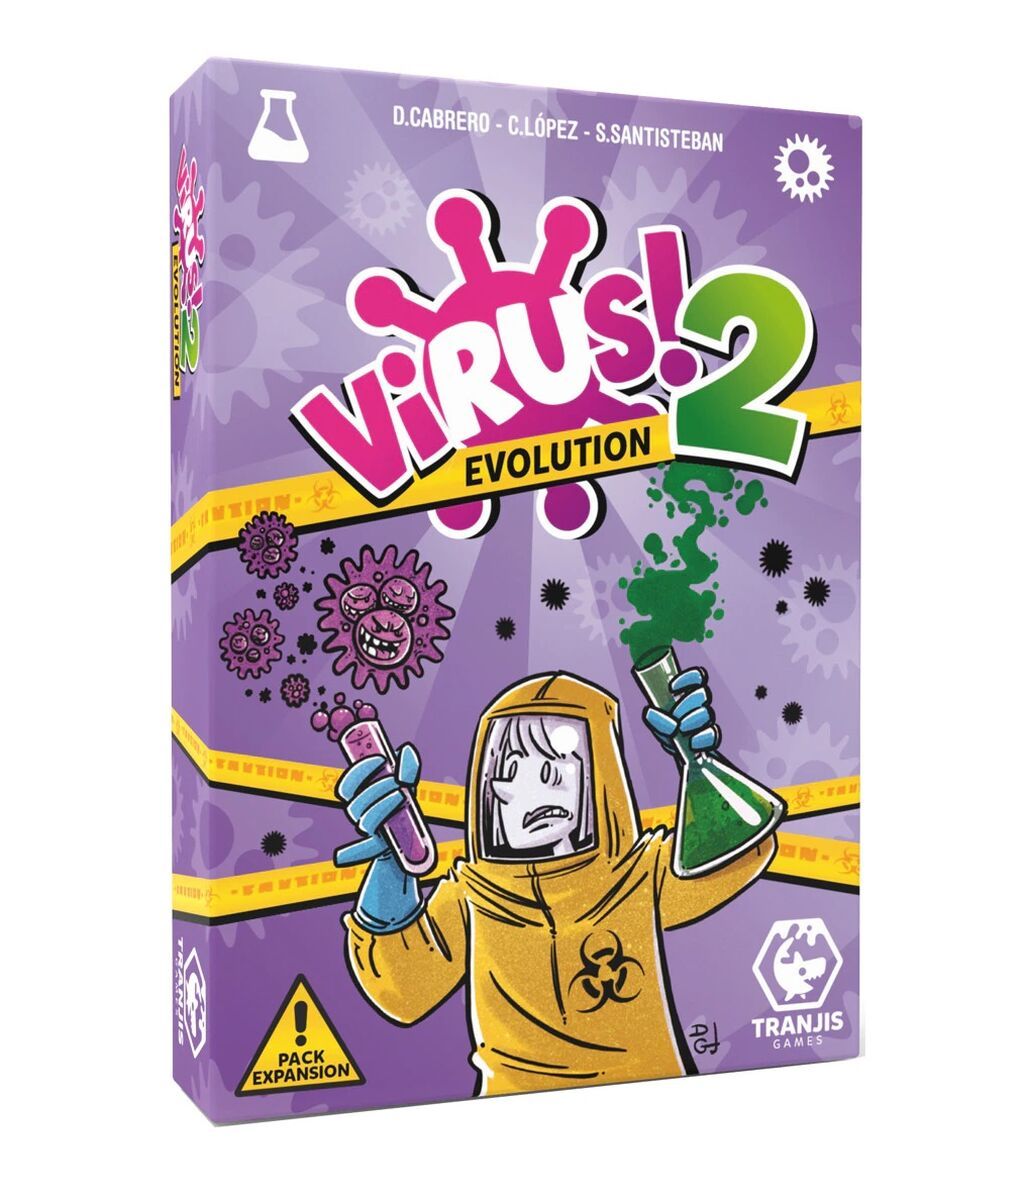 virus2